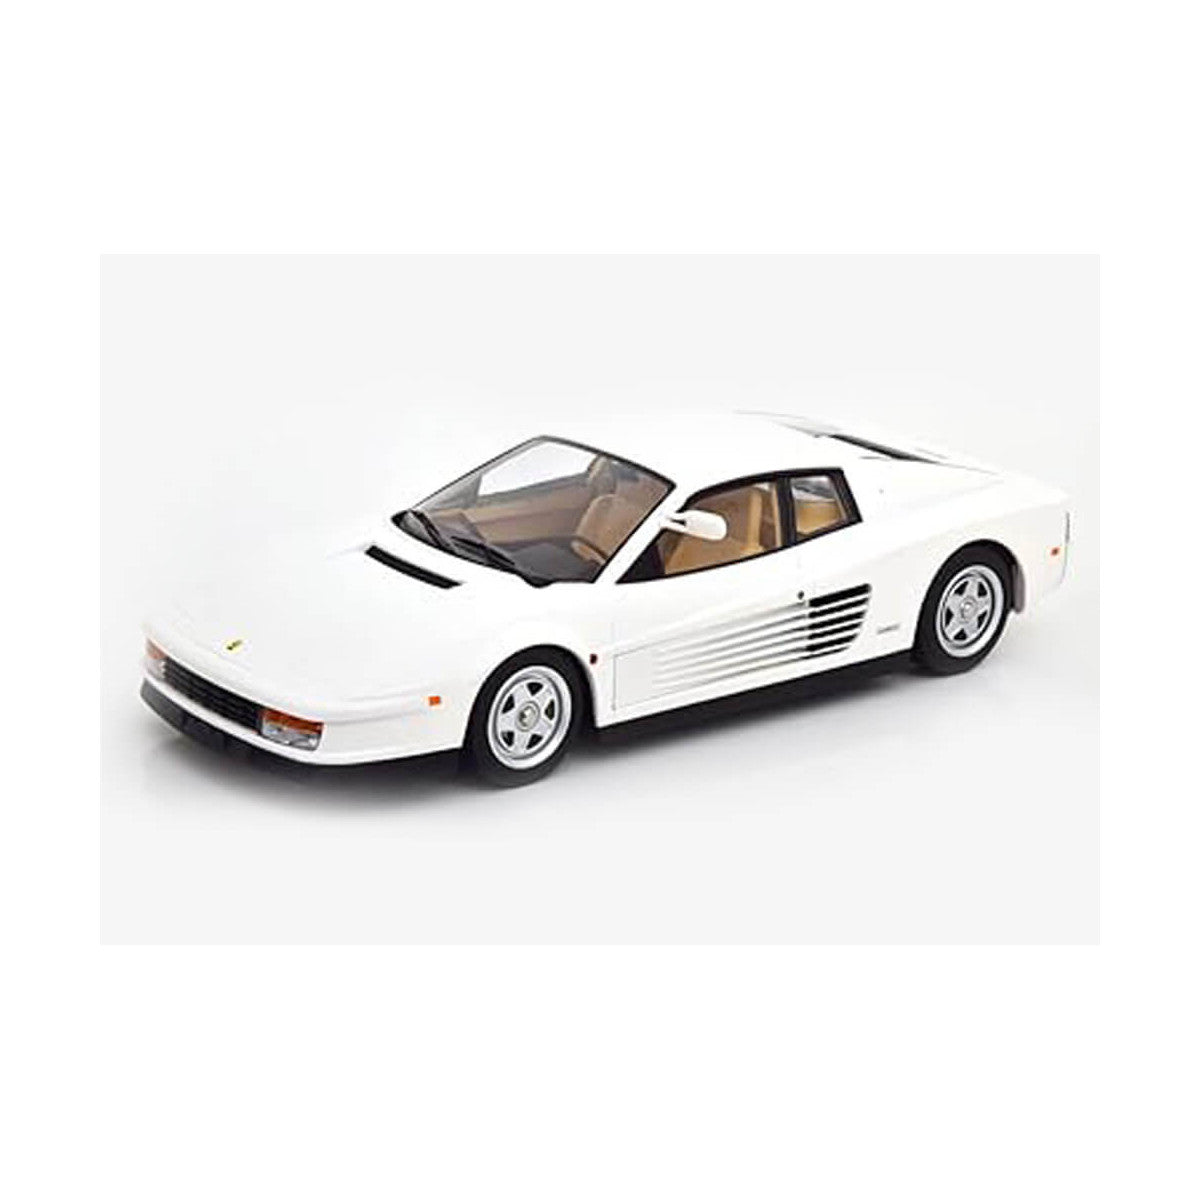 KK Scale Ferrari Testarossa White Monospecchio 1984 US-Version 1:18